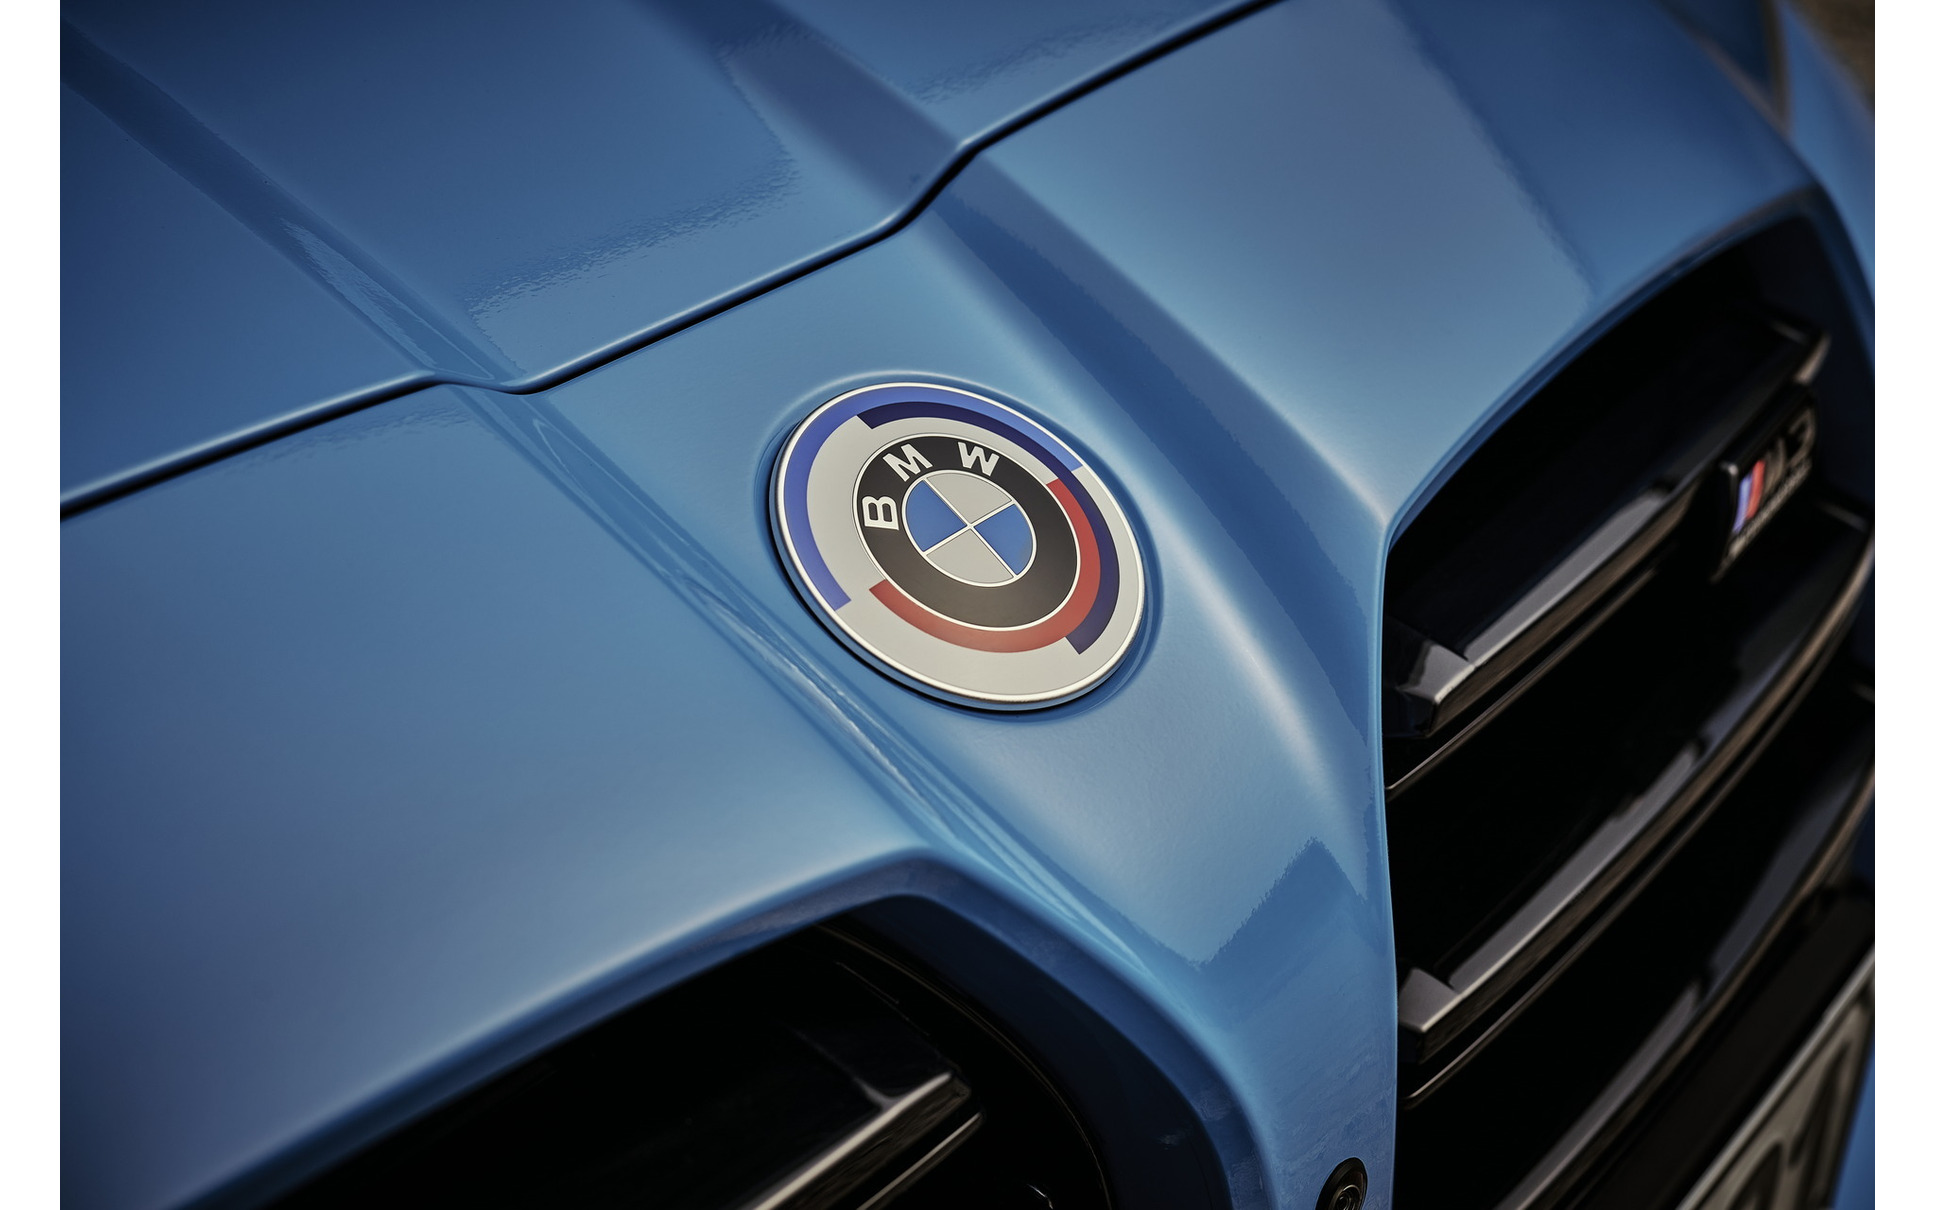 BMW M3 ツーリング の「Mパフォーマンスパーツ」装着車